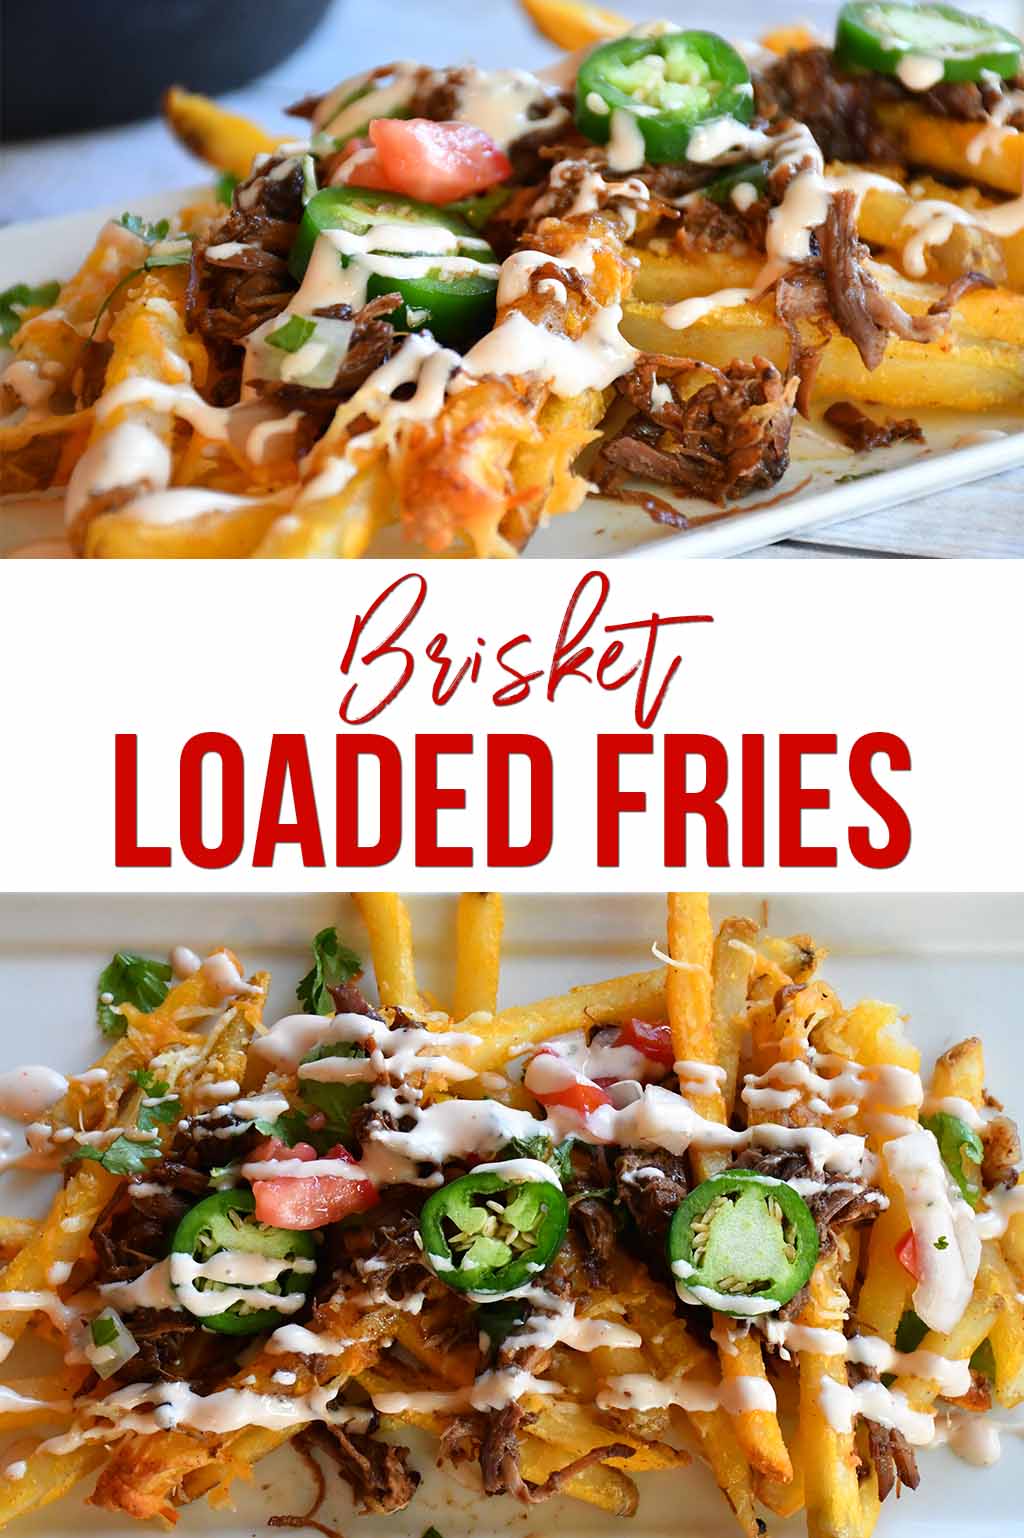 Brisket Loaded Fries | Loaded Fries | Potato Recipes | #4thofJuly #brisketloadedfries #potatoes #brisket